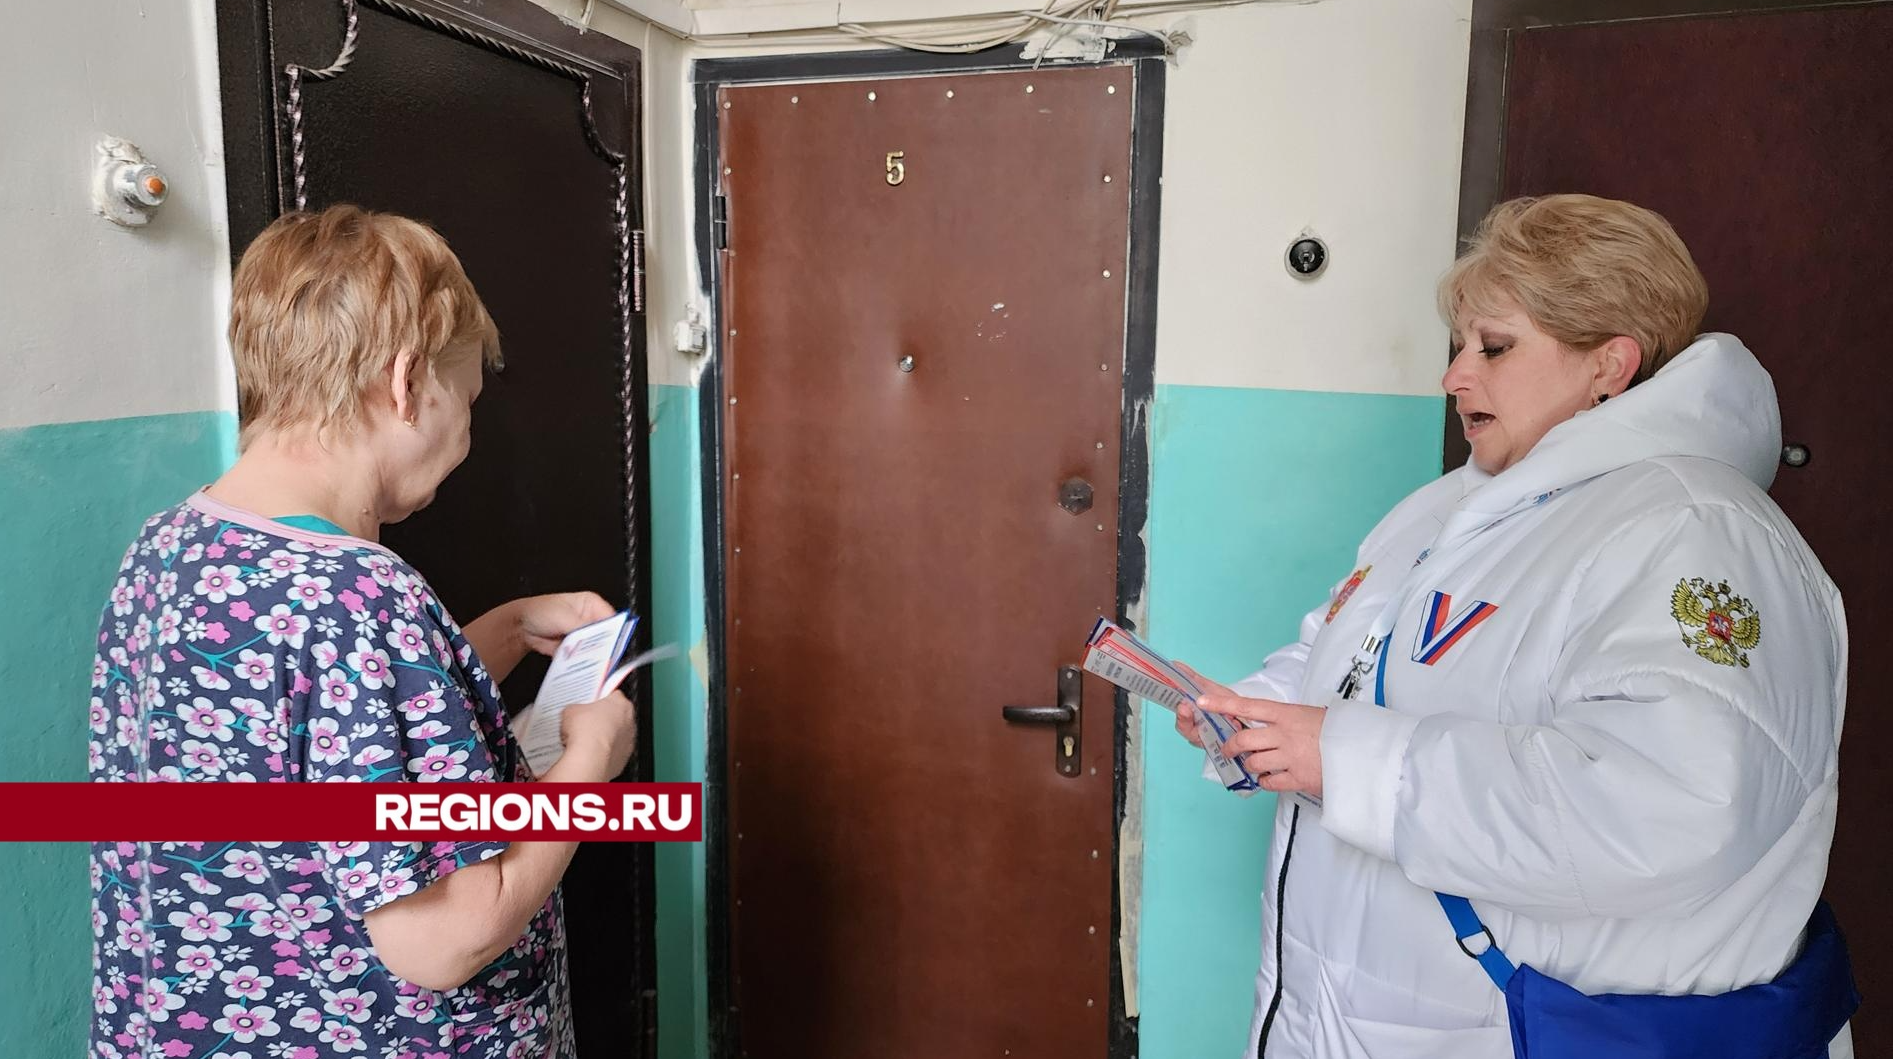 Информаторы рассказали жителям улицы Масленникова в Кашире о предстоящих выборах